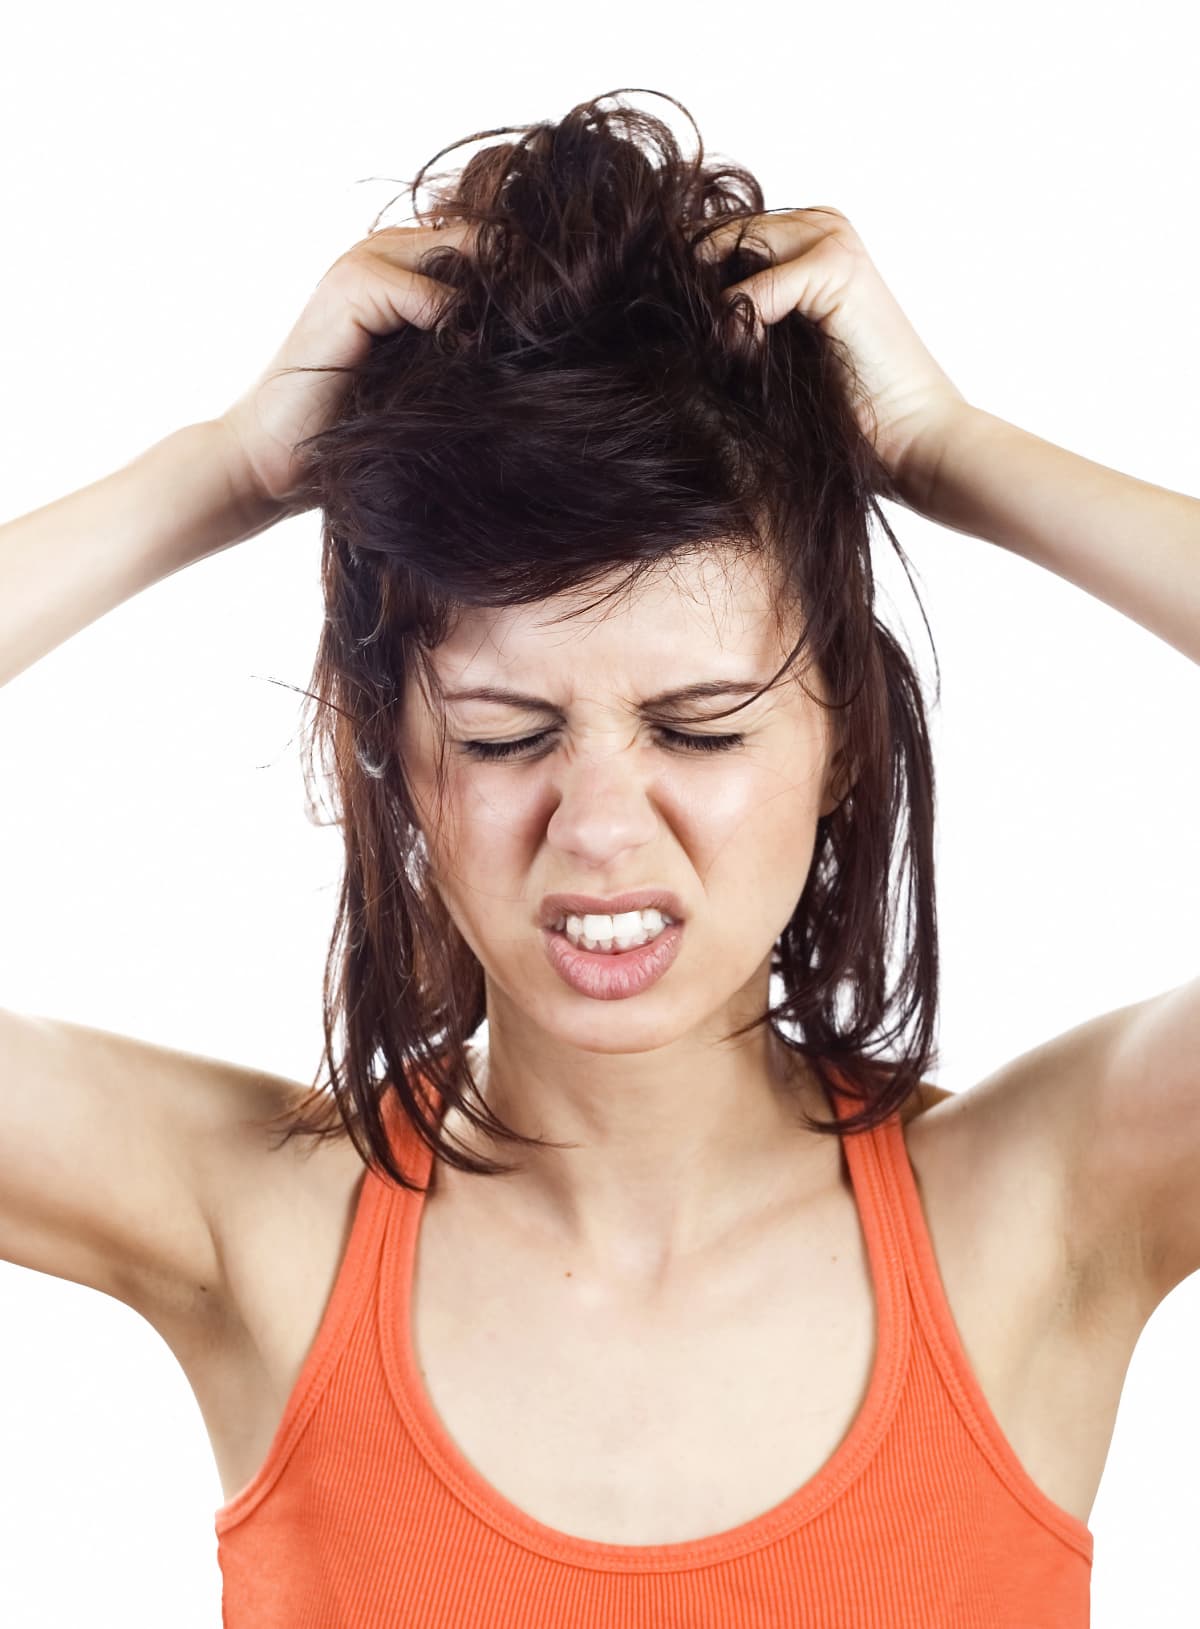 a woman scratching her scalp